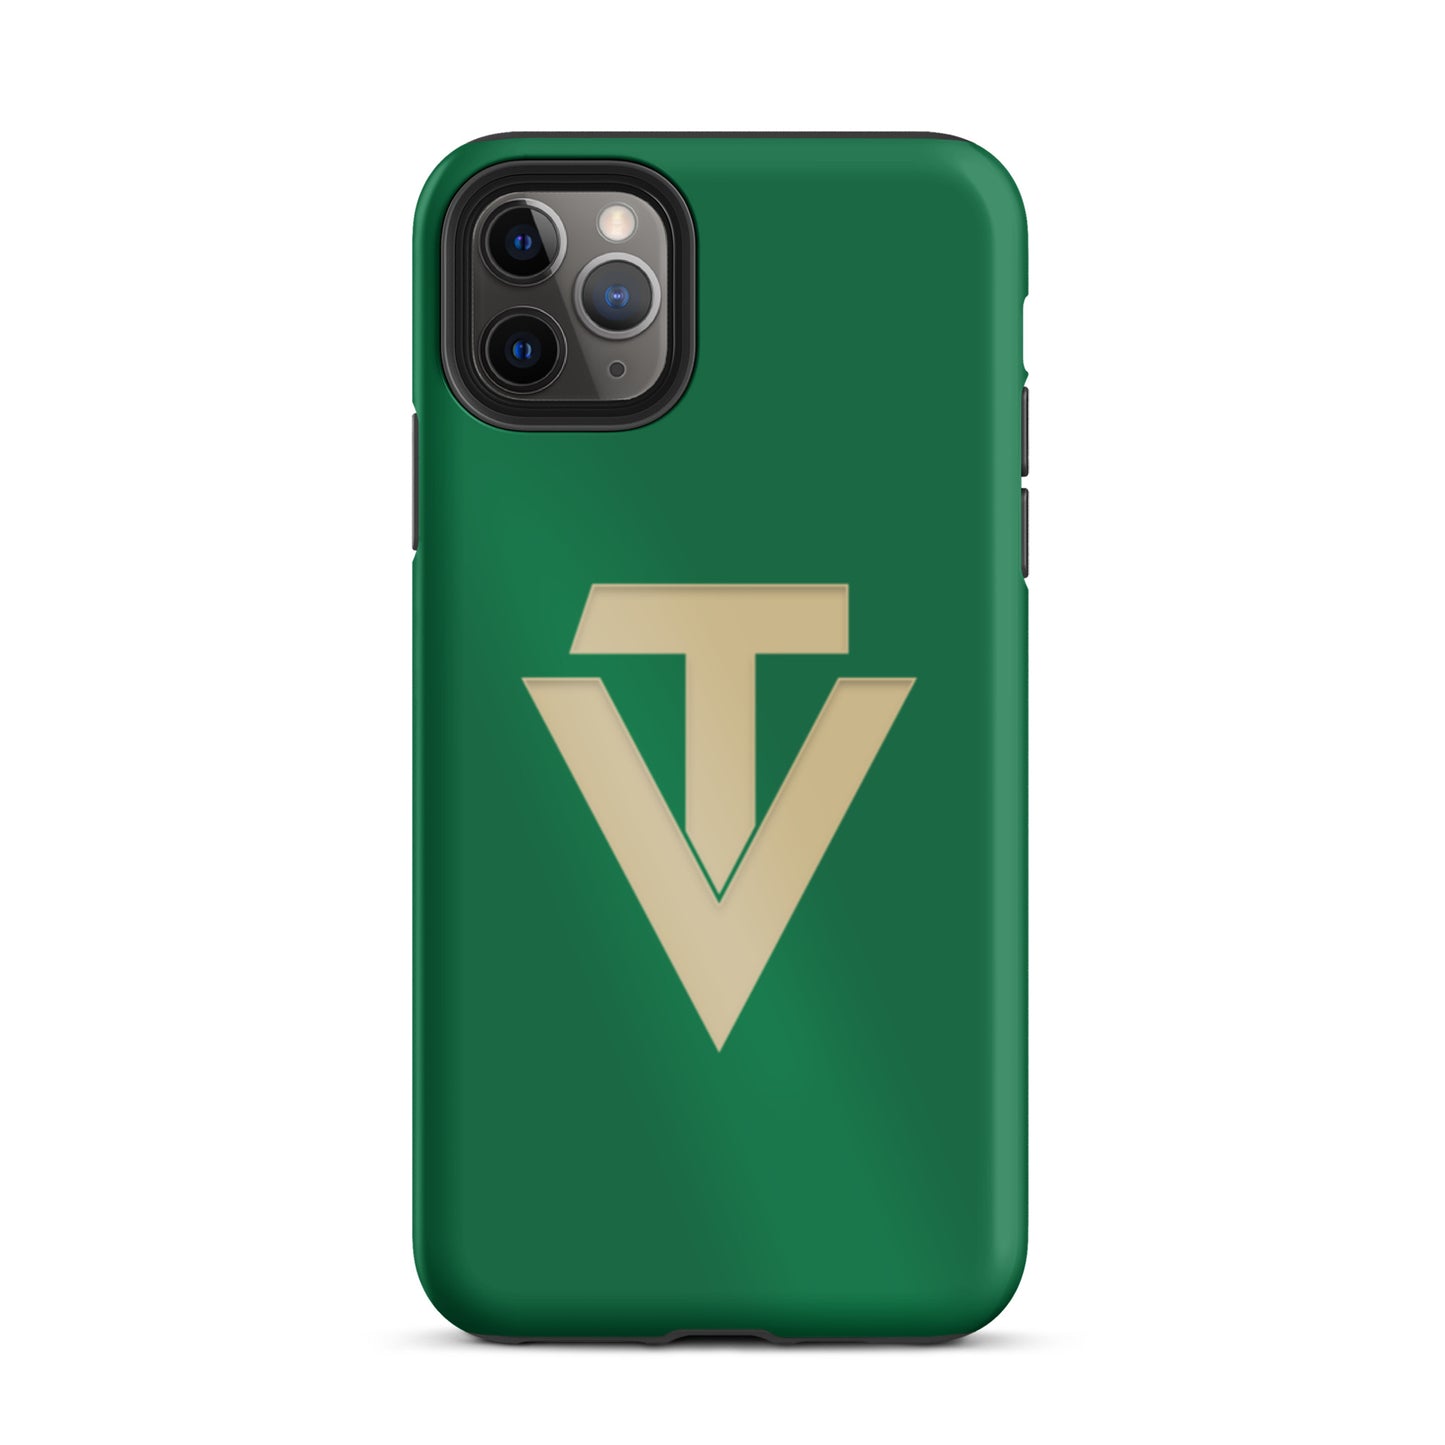 VT Tough iPhone case